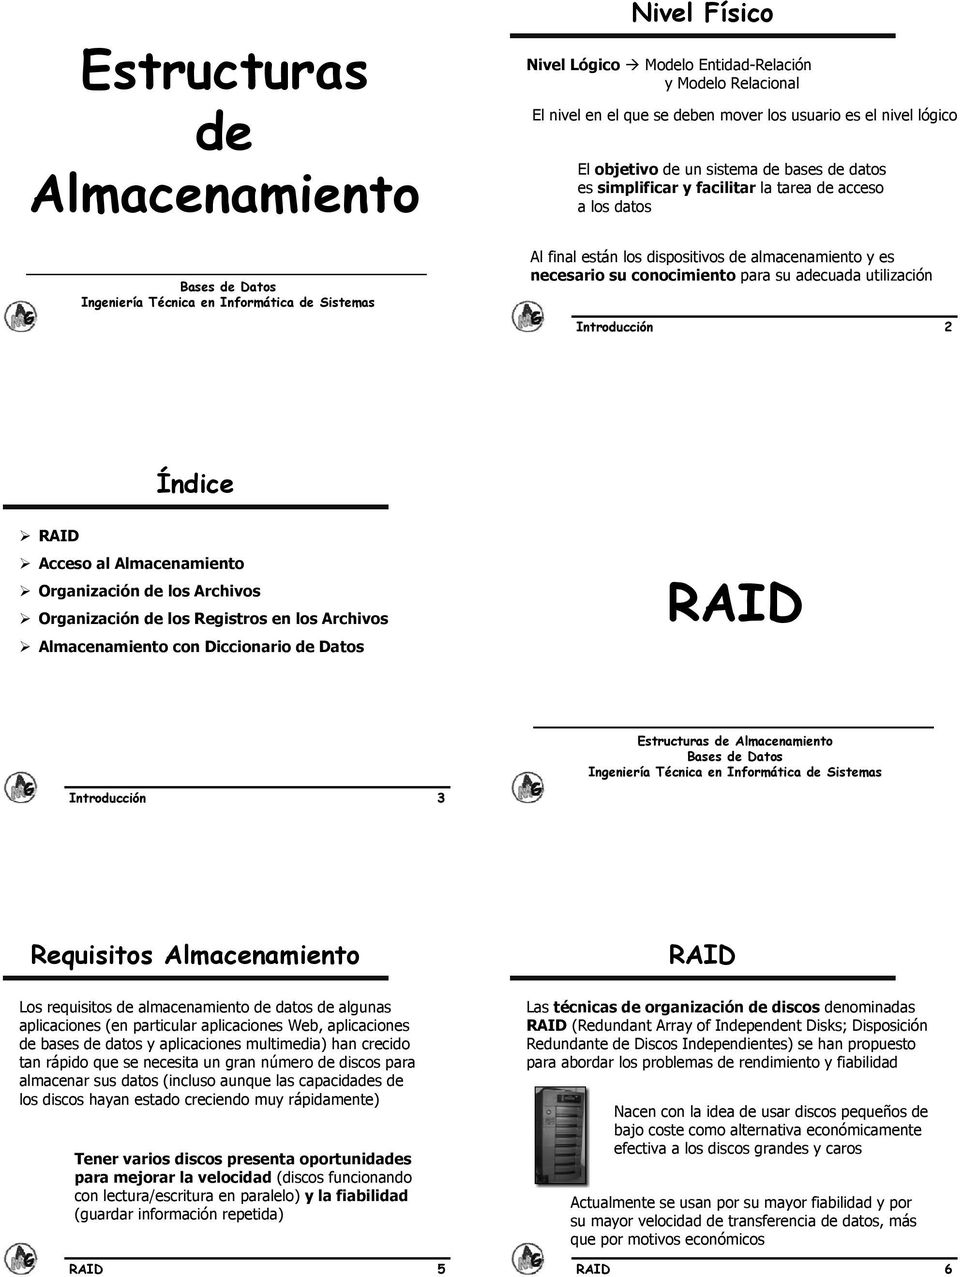 Índice RAID Acceso al Almacenamiento Organización de los Archivos Organización de los Registros en los Archivos Almacenamiento con Diccionario de Datos RAID Introducción 3 Estructuras de